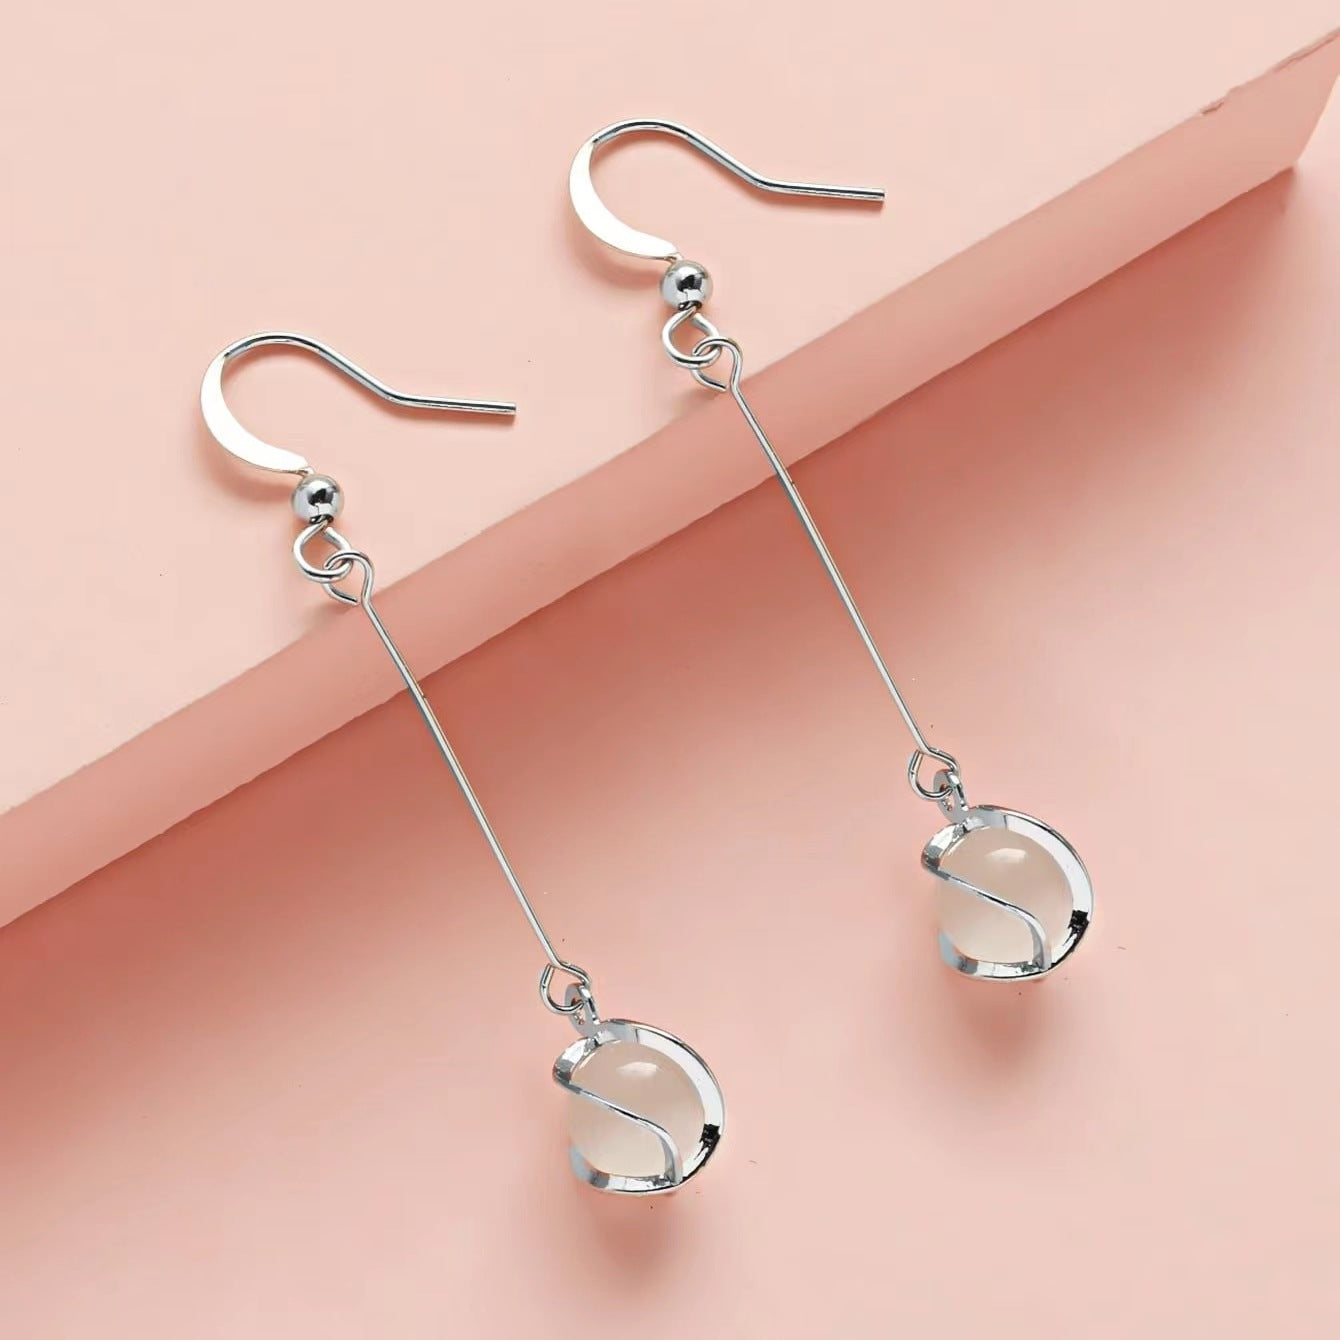 Sterling Silver Needle Opal Tassel Long Dignified Sense Of Design Fashion Ear Hook